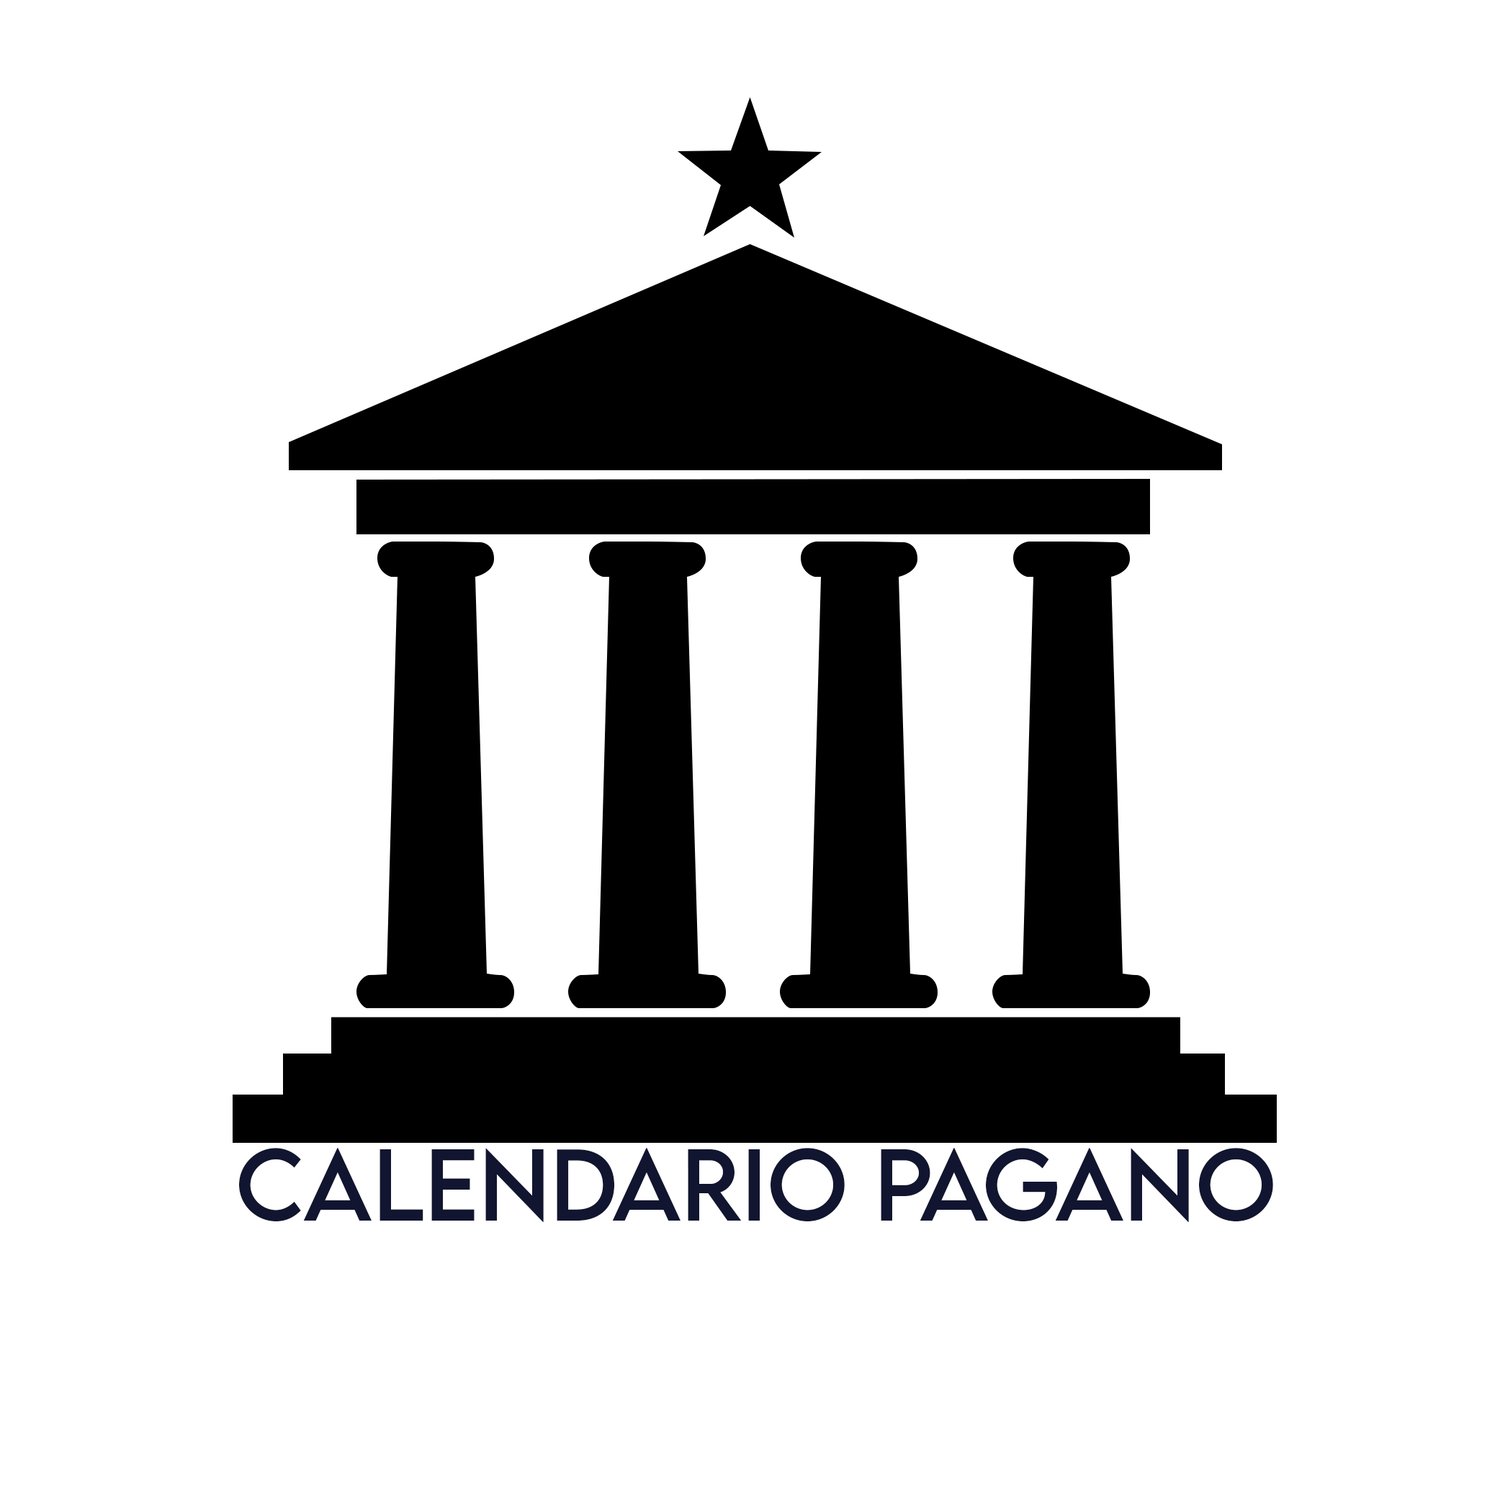 Calendario Pagano, culti antichi, folclore, feste precristiane, tradizioni.